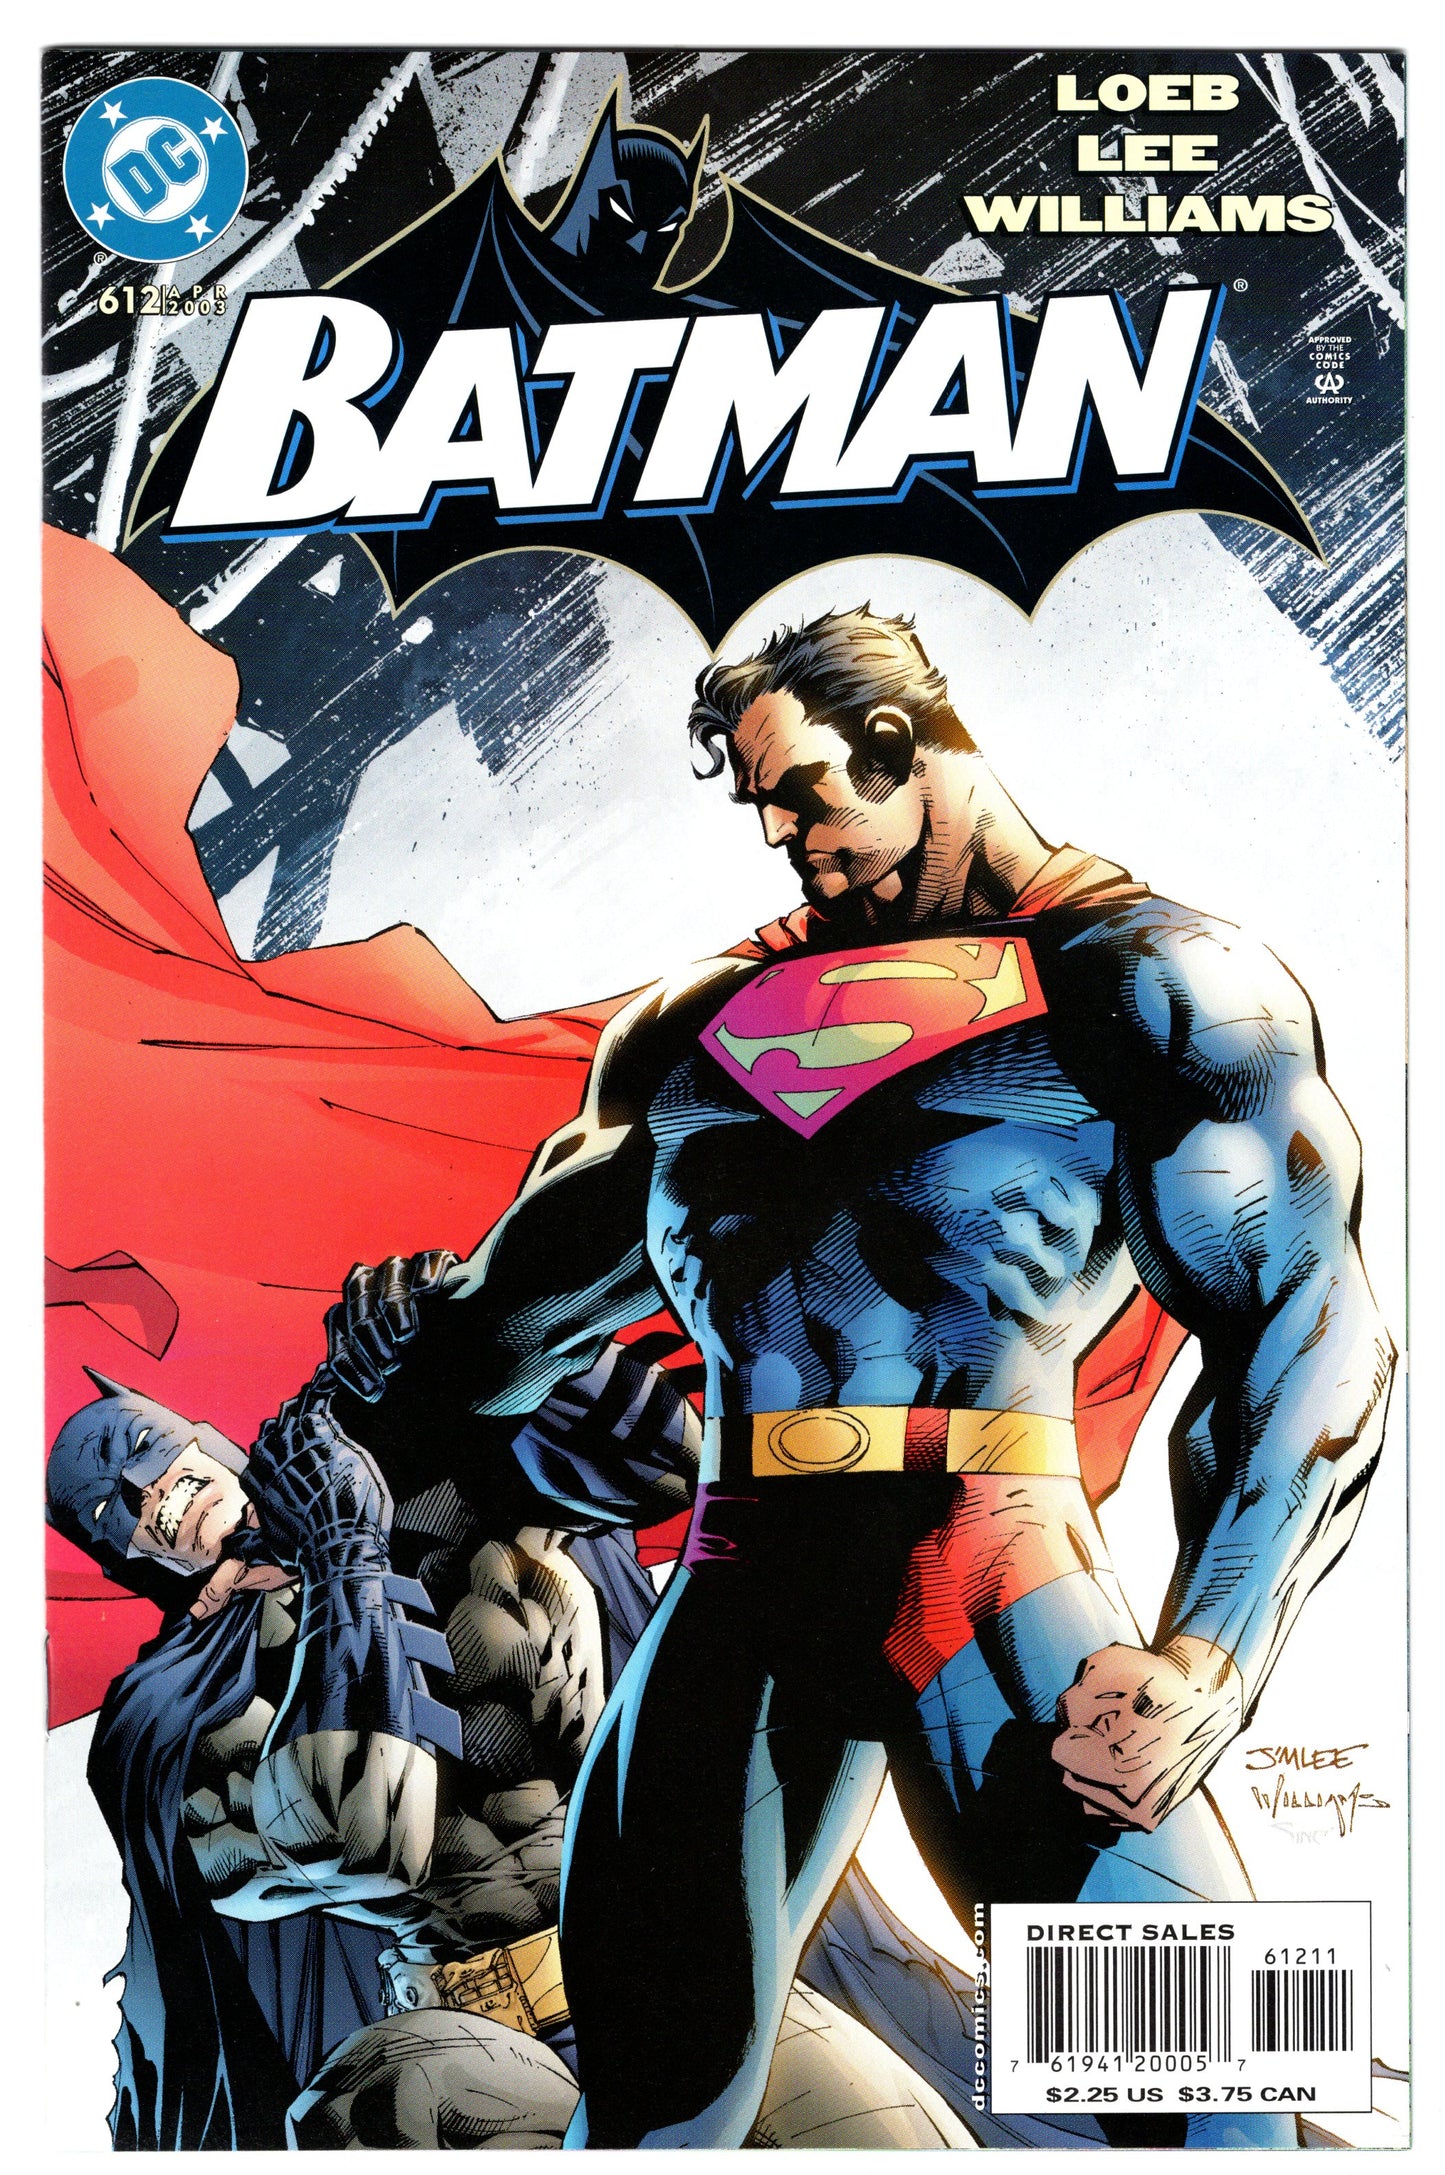 Batman - Issue #612 (April, 2003 - DC Universe) NM